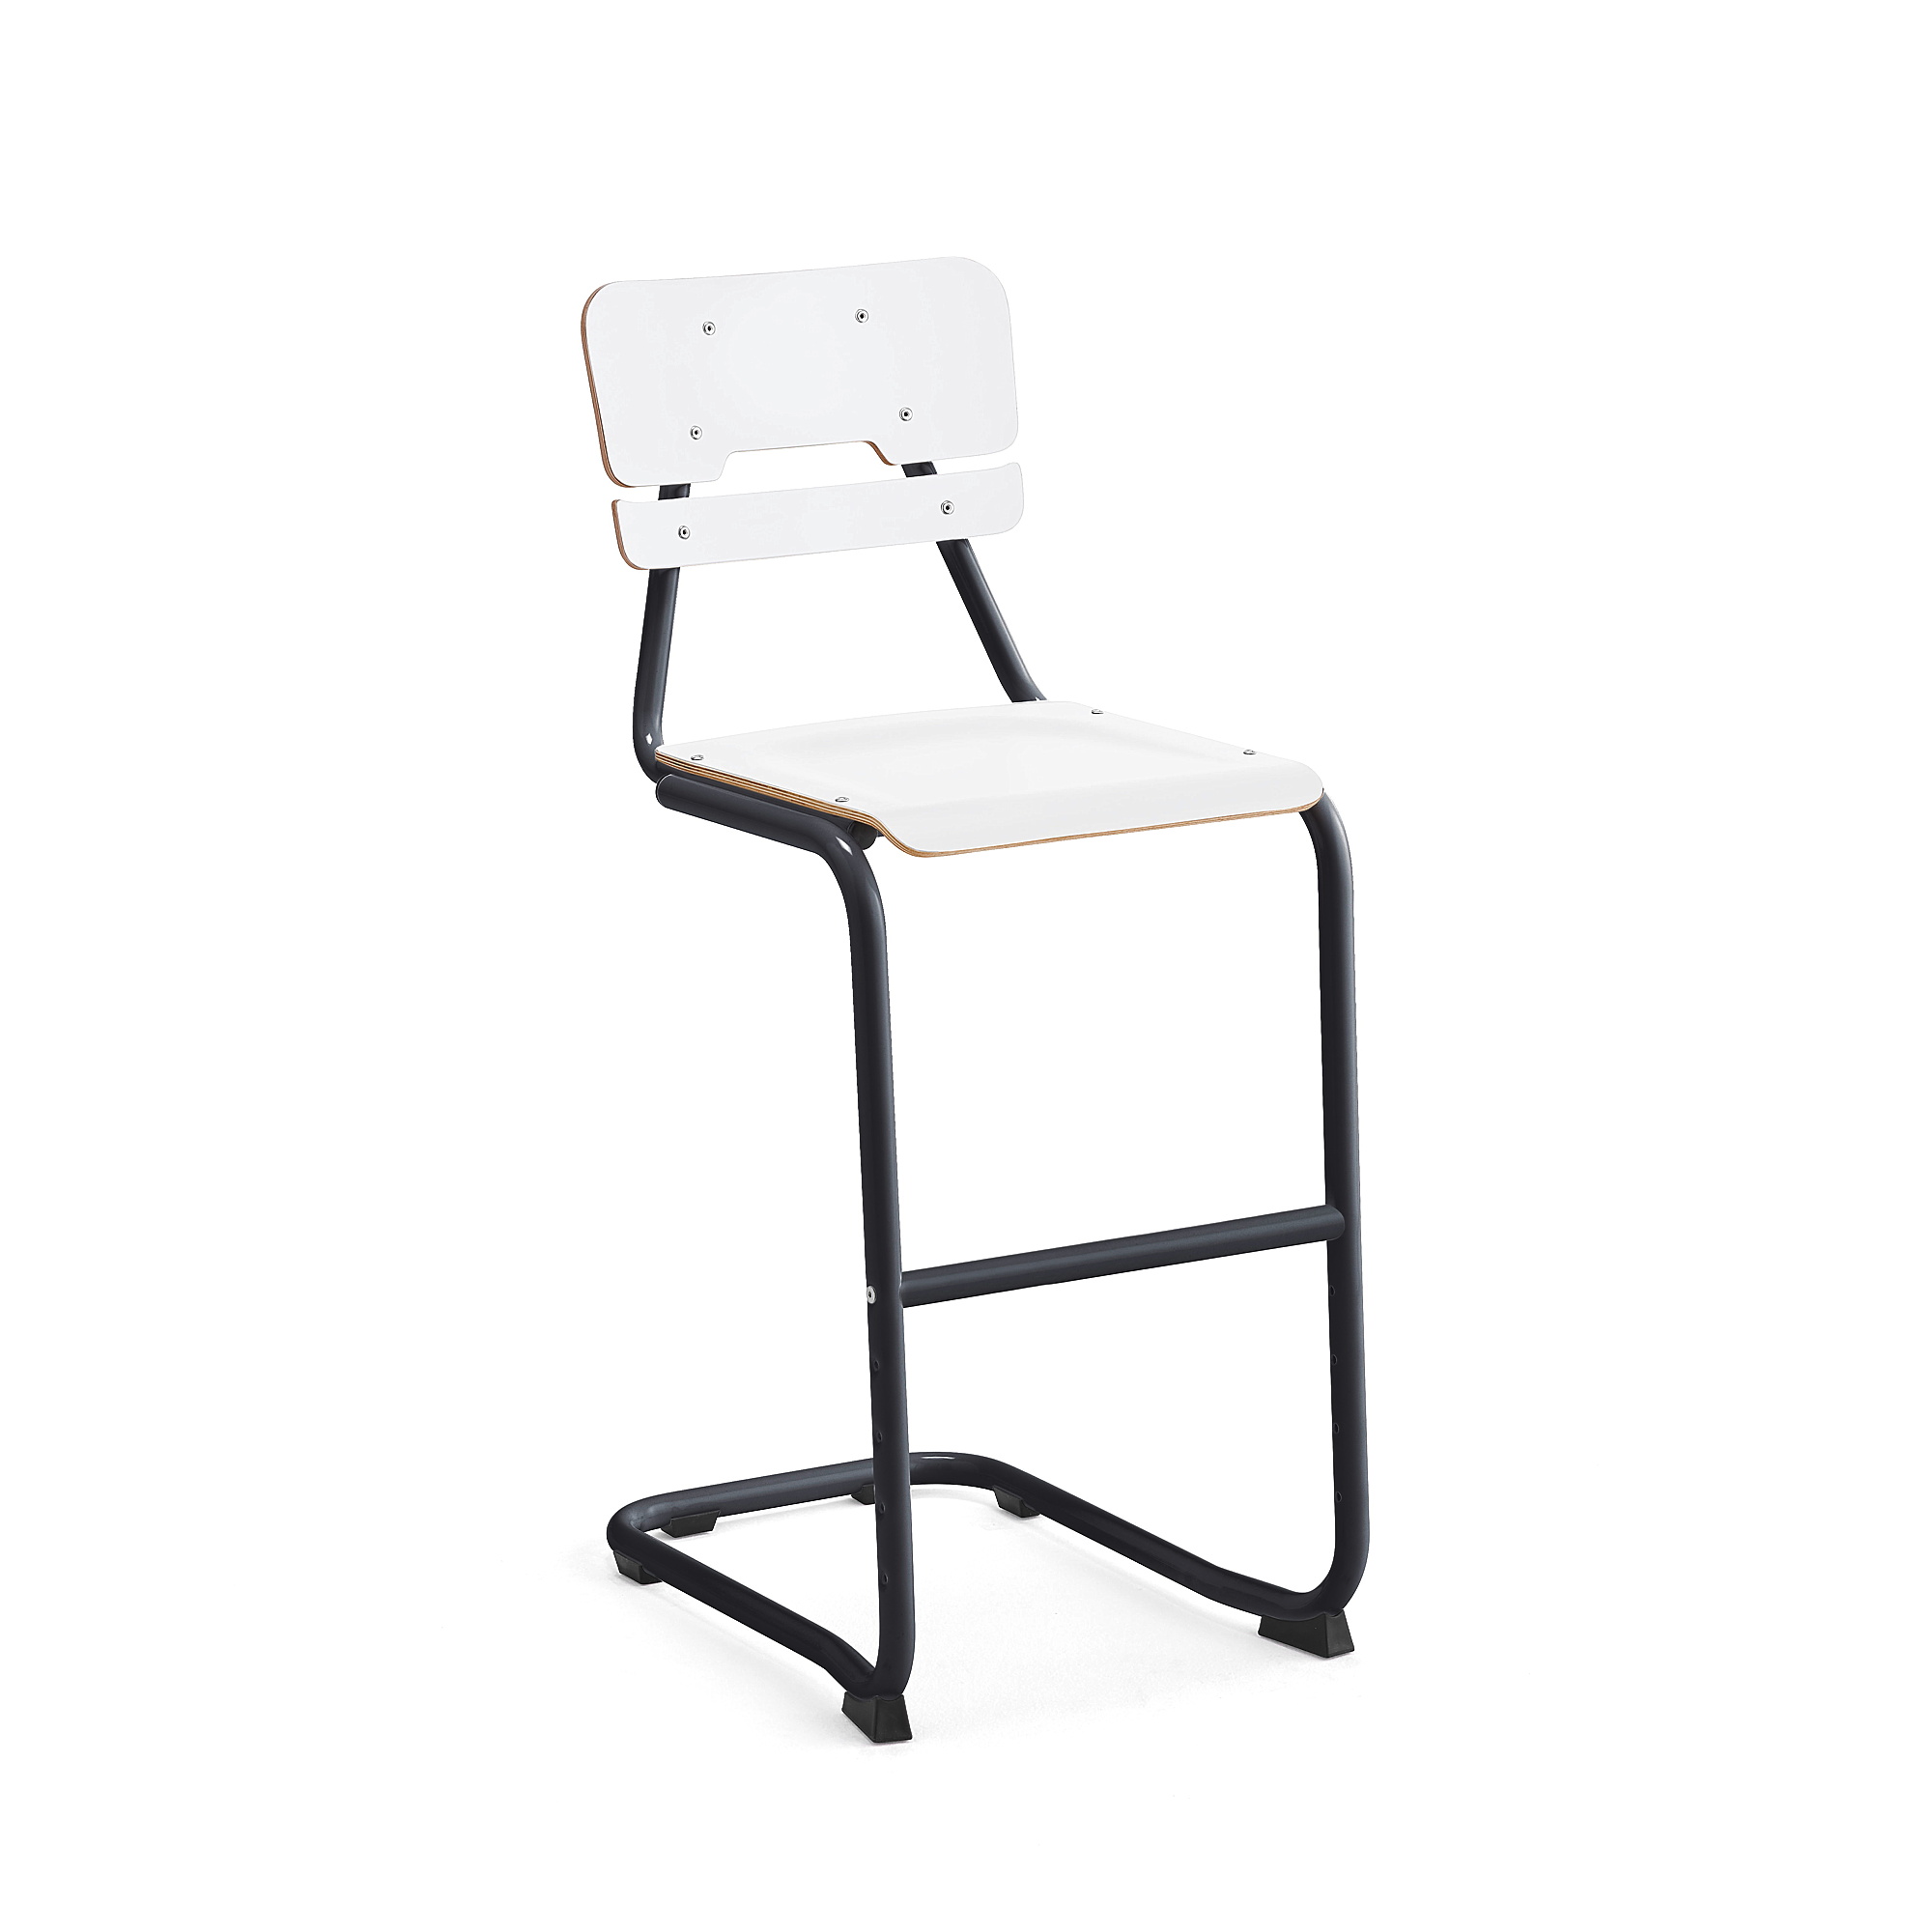 Školní židle LEGERE I, výška 650 mm, antracitově šedá, bílá